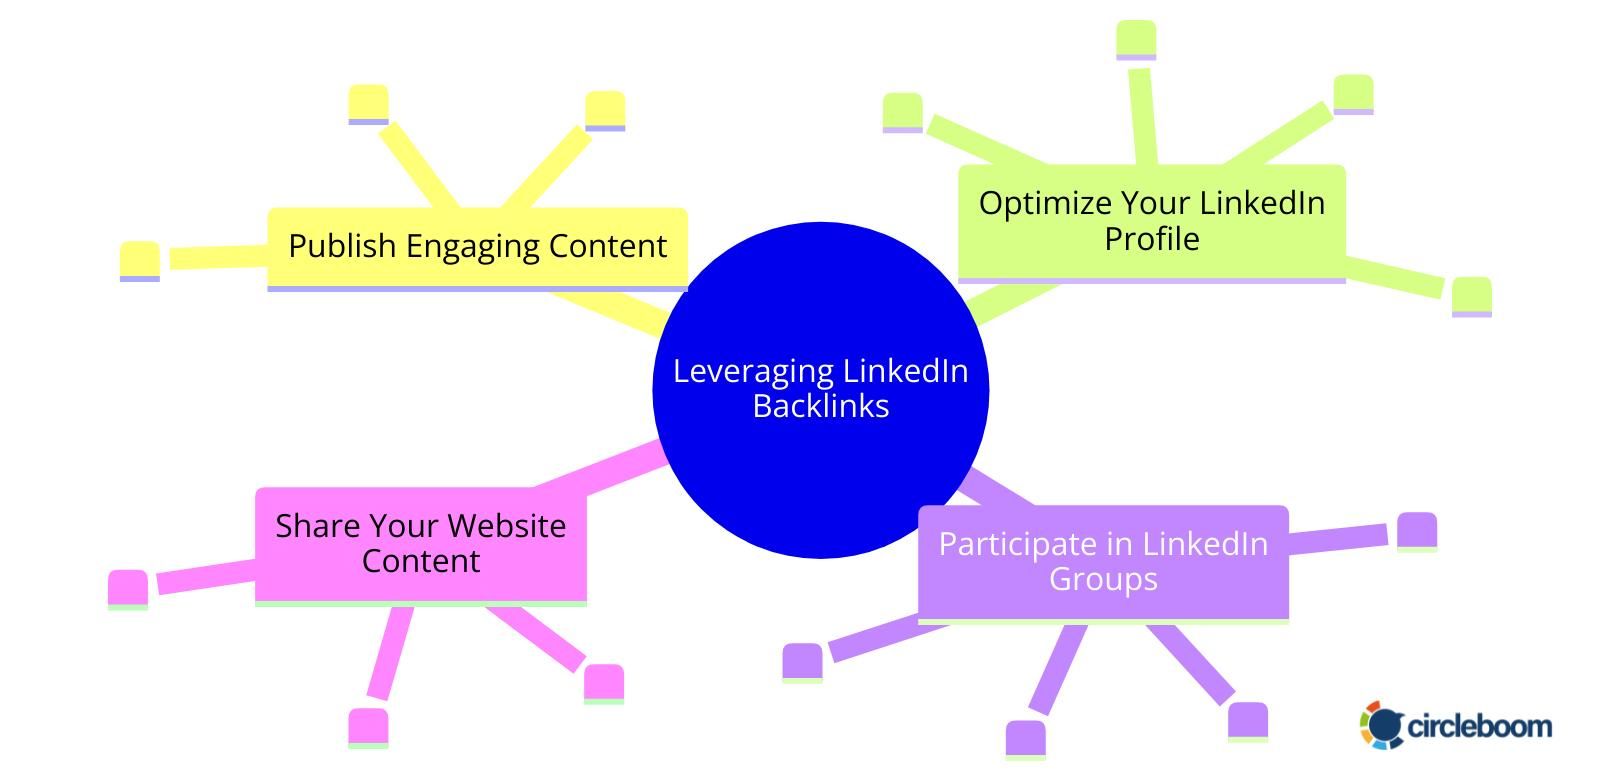 Leveraging LinkedIn Backlinks